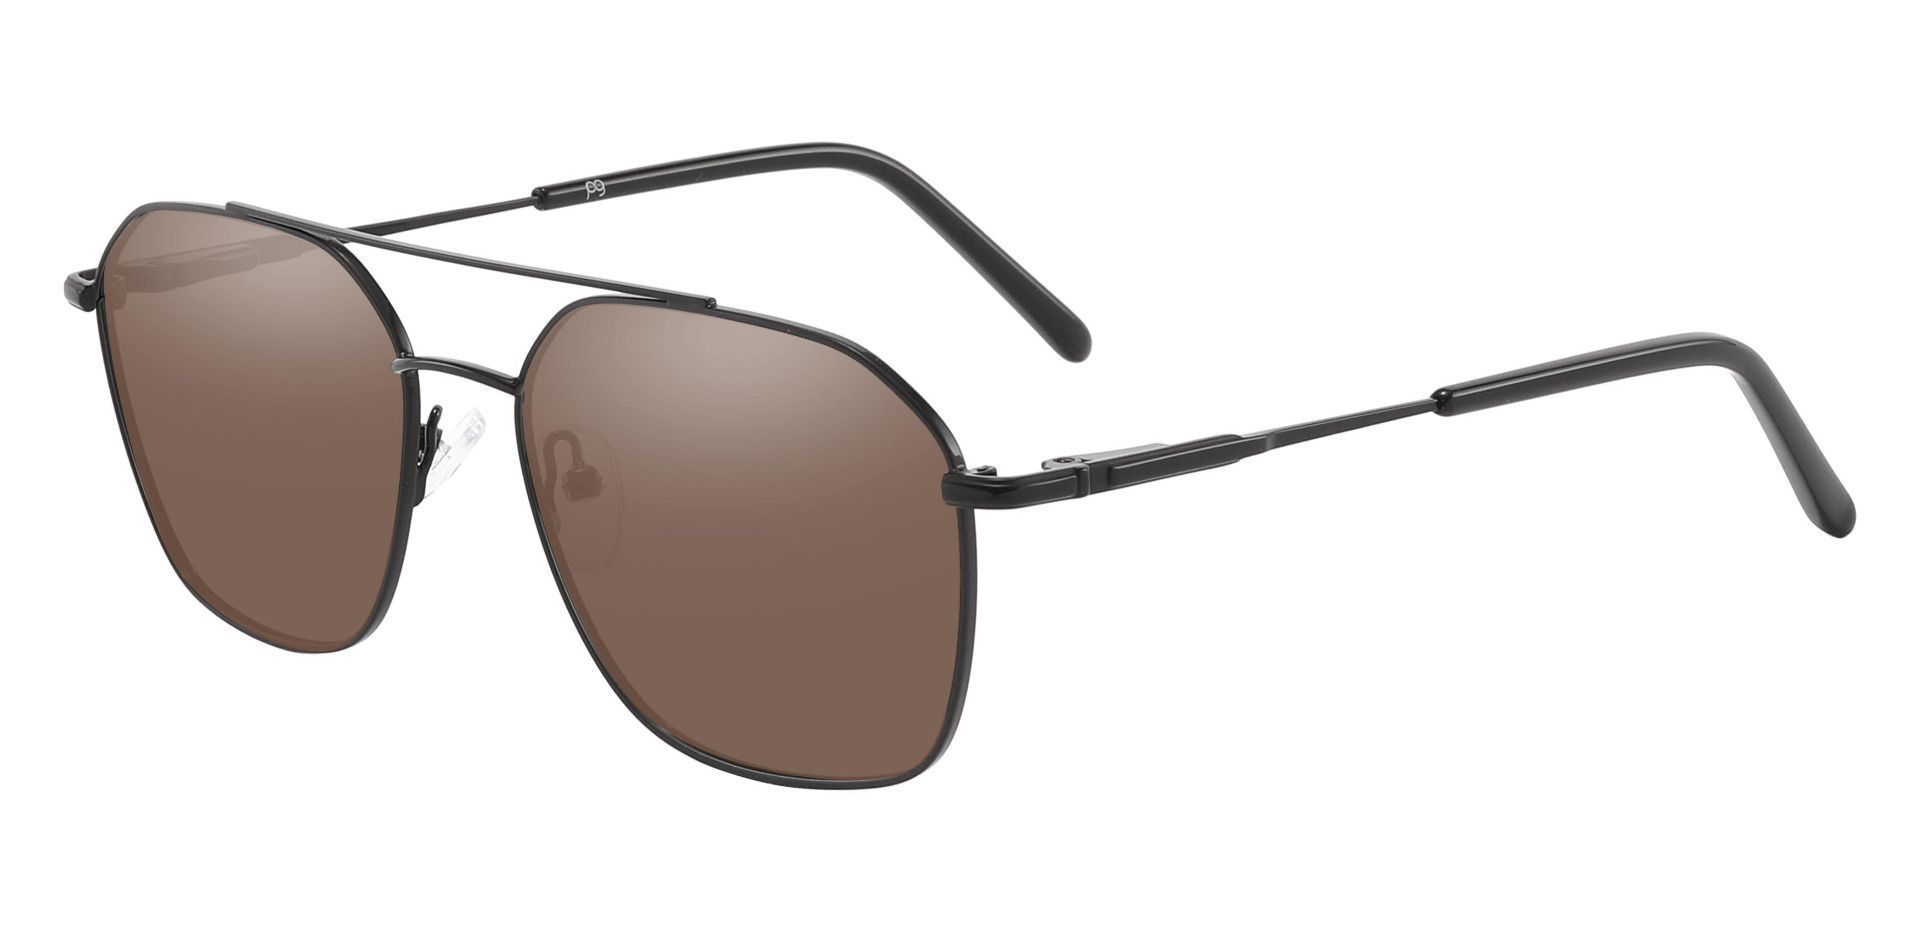 Harvey Aviator Reading Sunglasses - Black Frame With Brown Lenses